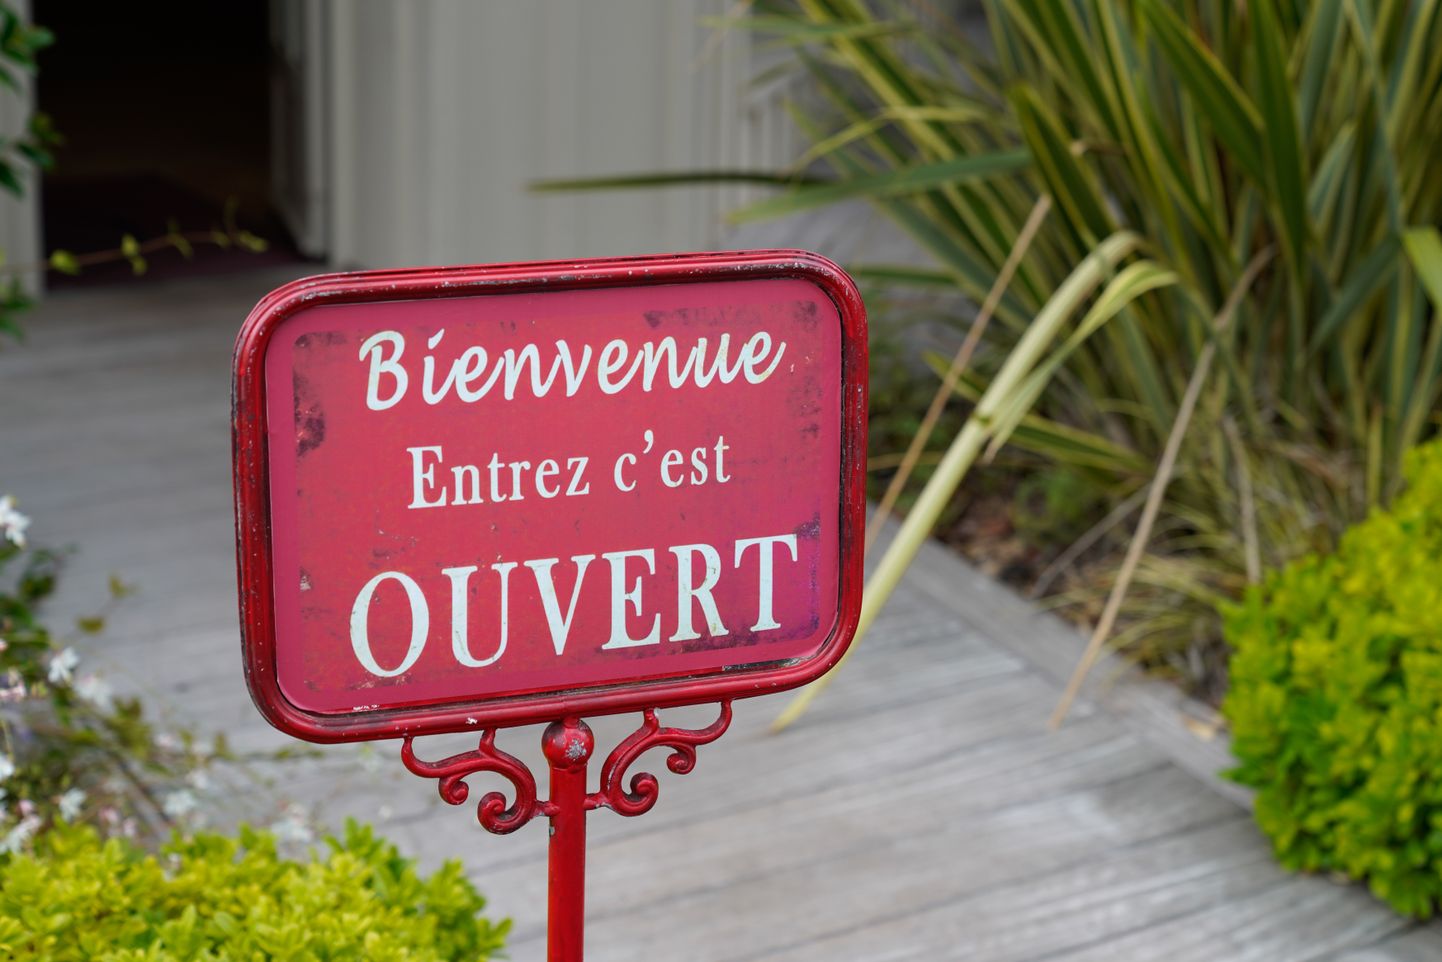 Prantsuskeelne silt: «Tere tulemast! Astuge sisse, oleme avatud». Prantsusmaal peavad konditsioneeriga poed uksed kinni, mitte avatuna hoidma, et energiat kokku hoida